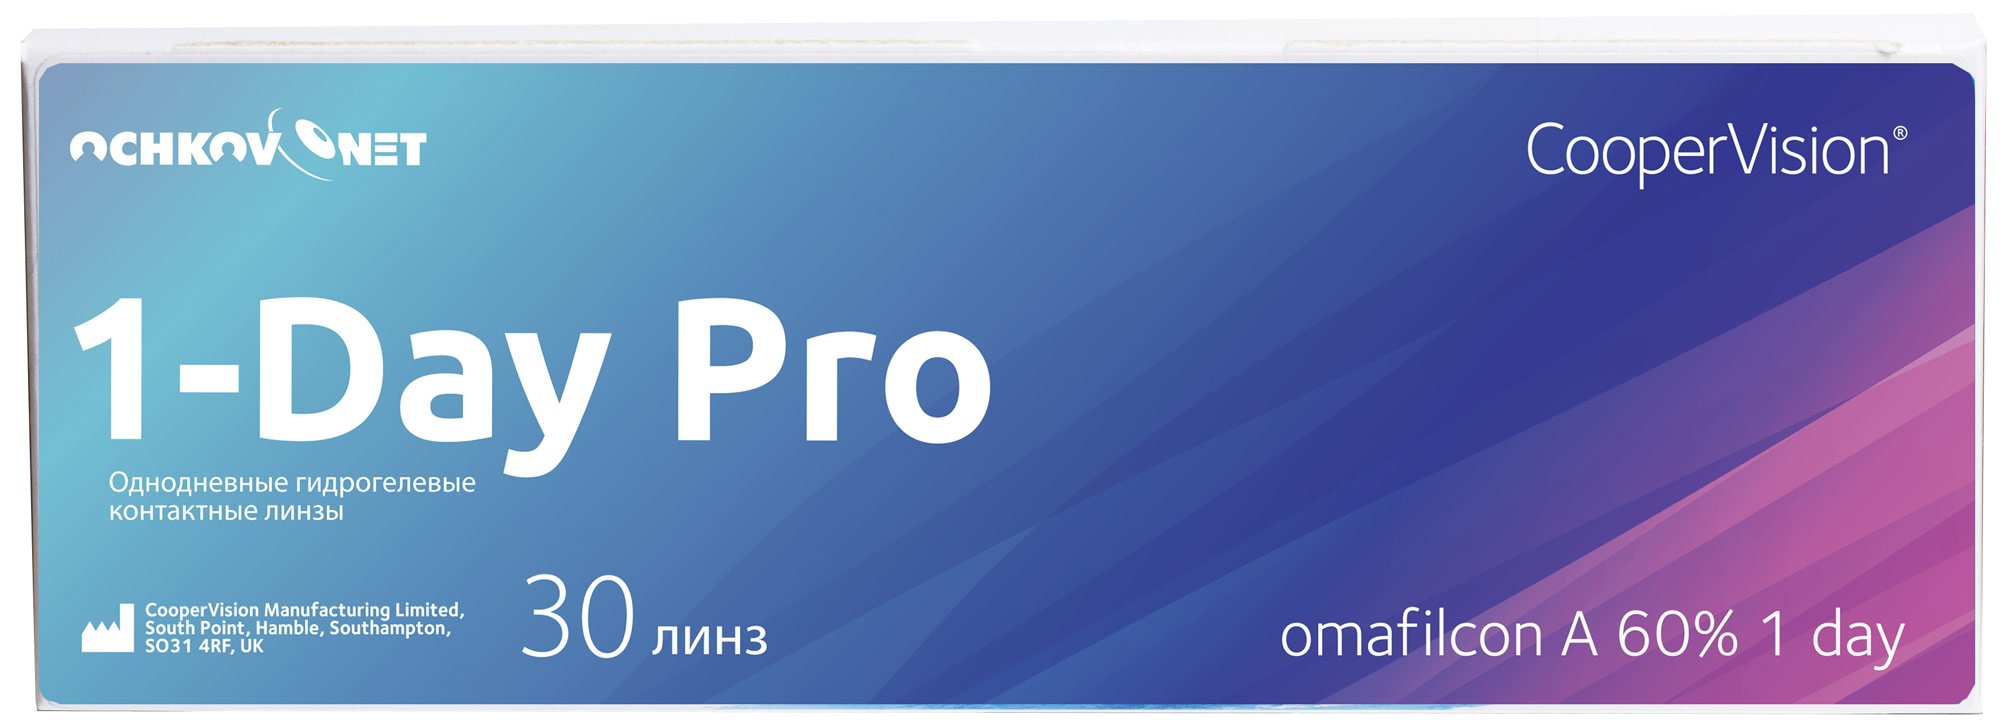 Купить Контактные линзы Ochkov.Net 1-Day Pro 30 линз 8.7, -4.75